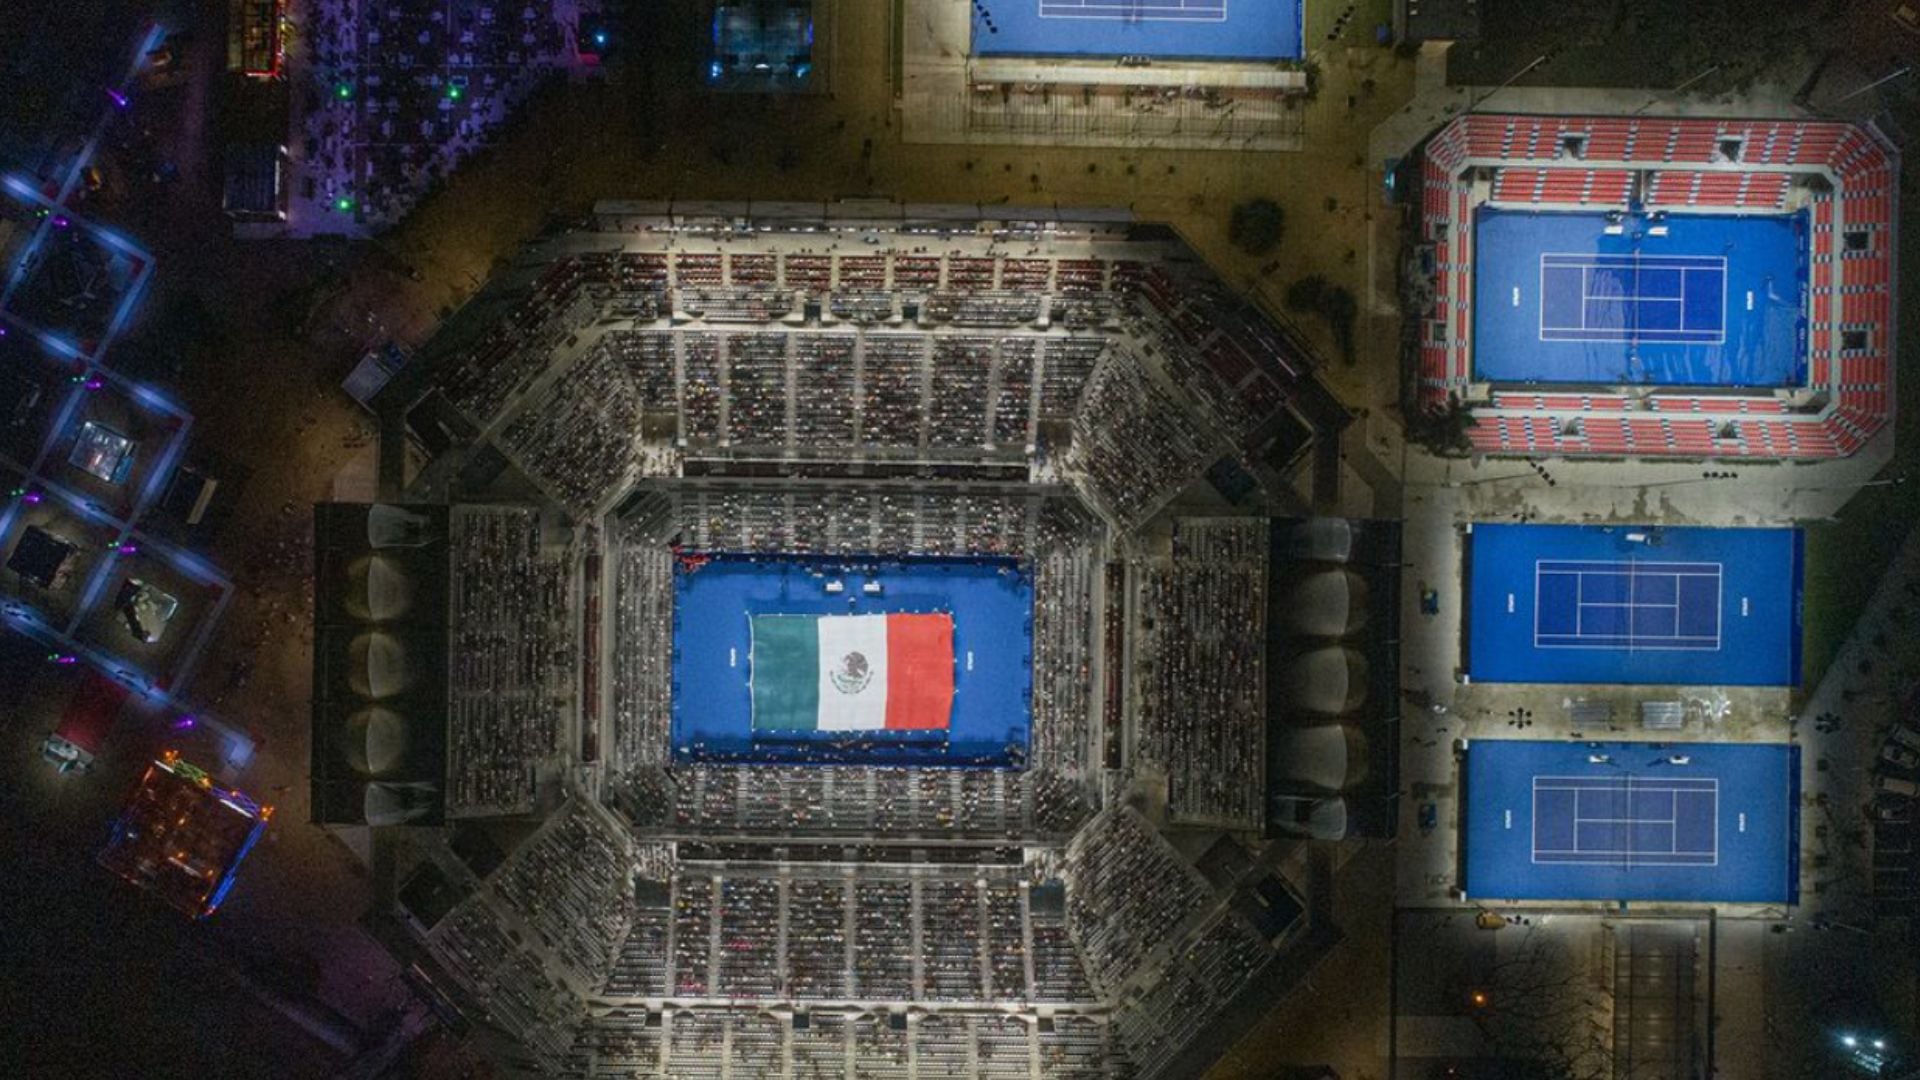 Abierto Mexicano de Tenis - Arena GNP